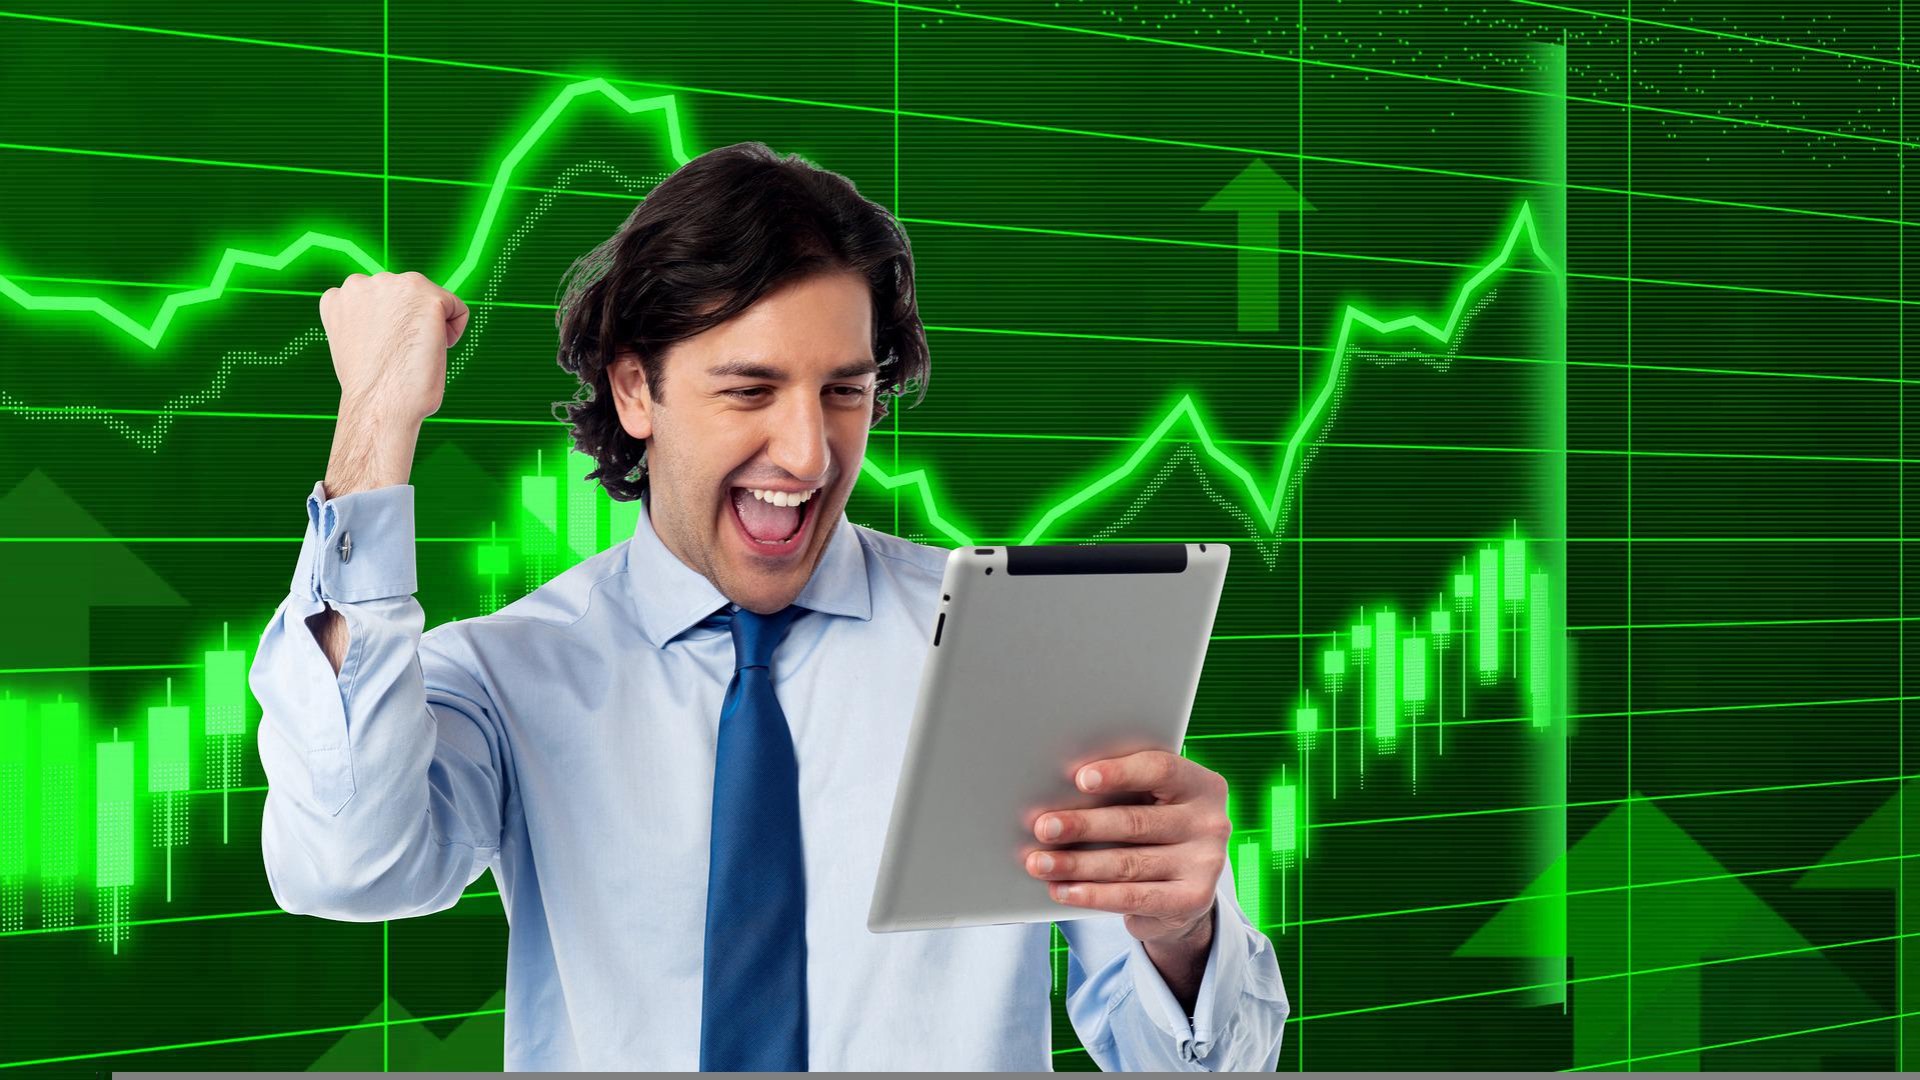 interactive brokers steigert gewinn und dividende je aktie kräftig